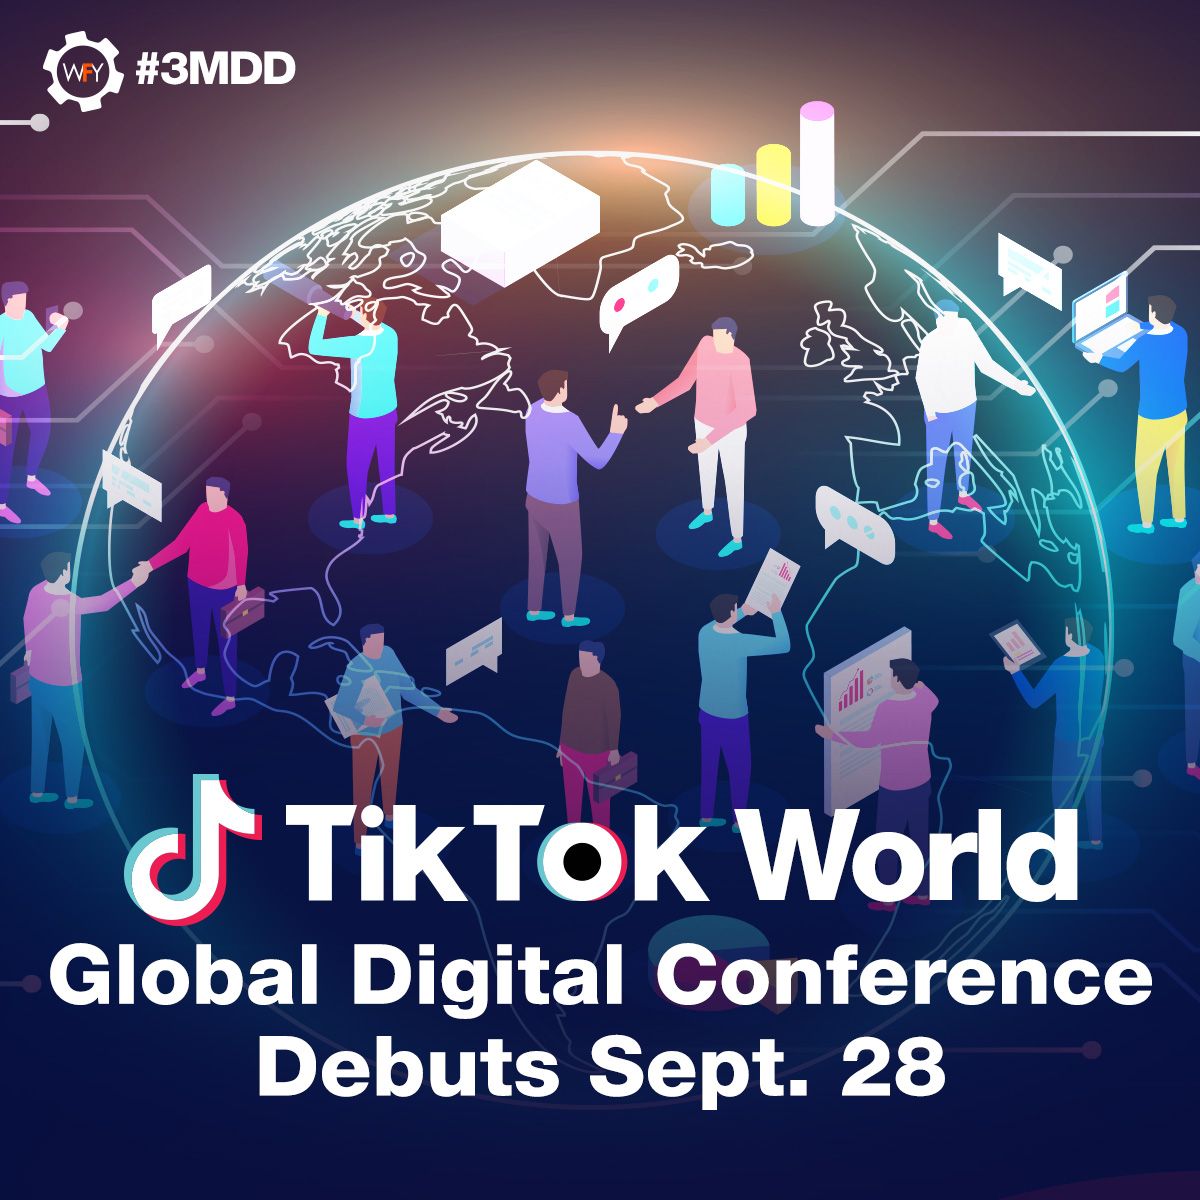 TikTok World Global Digital Conference Debuts Sept. 28